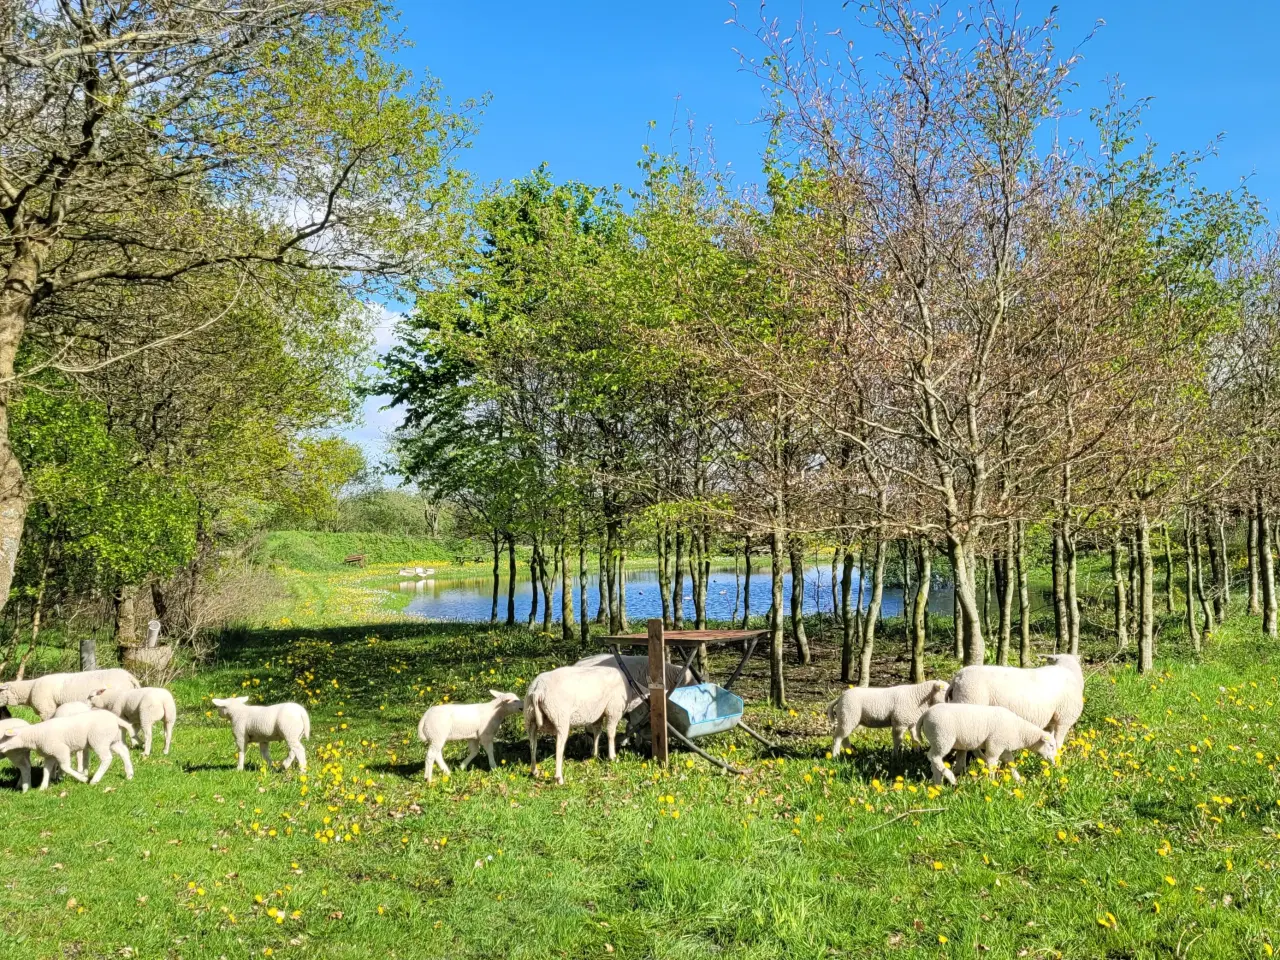 Billede 1 - Texel får med 1 lam